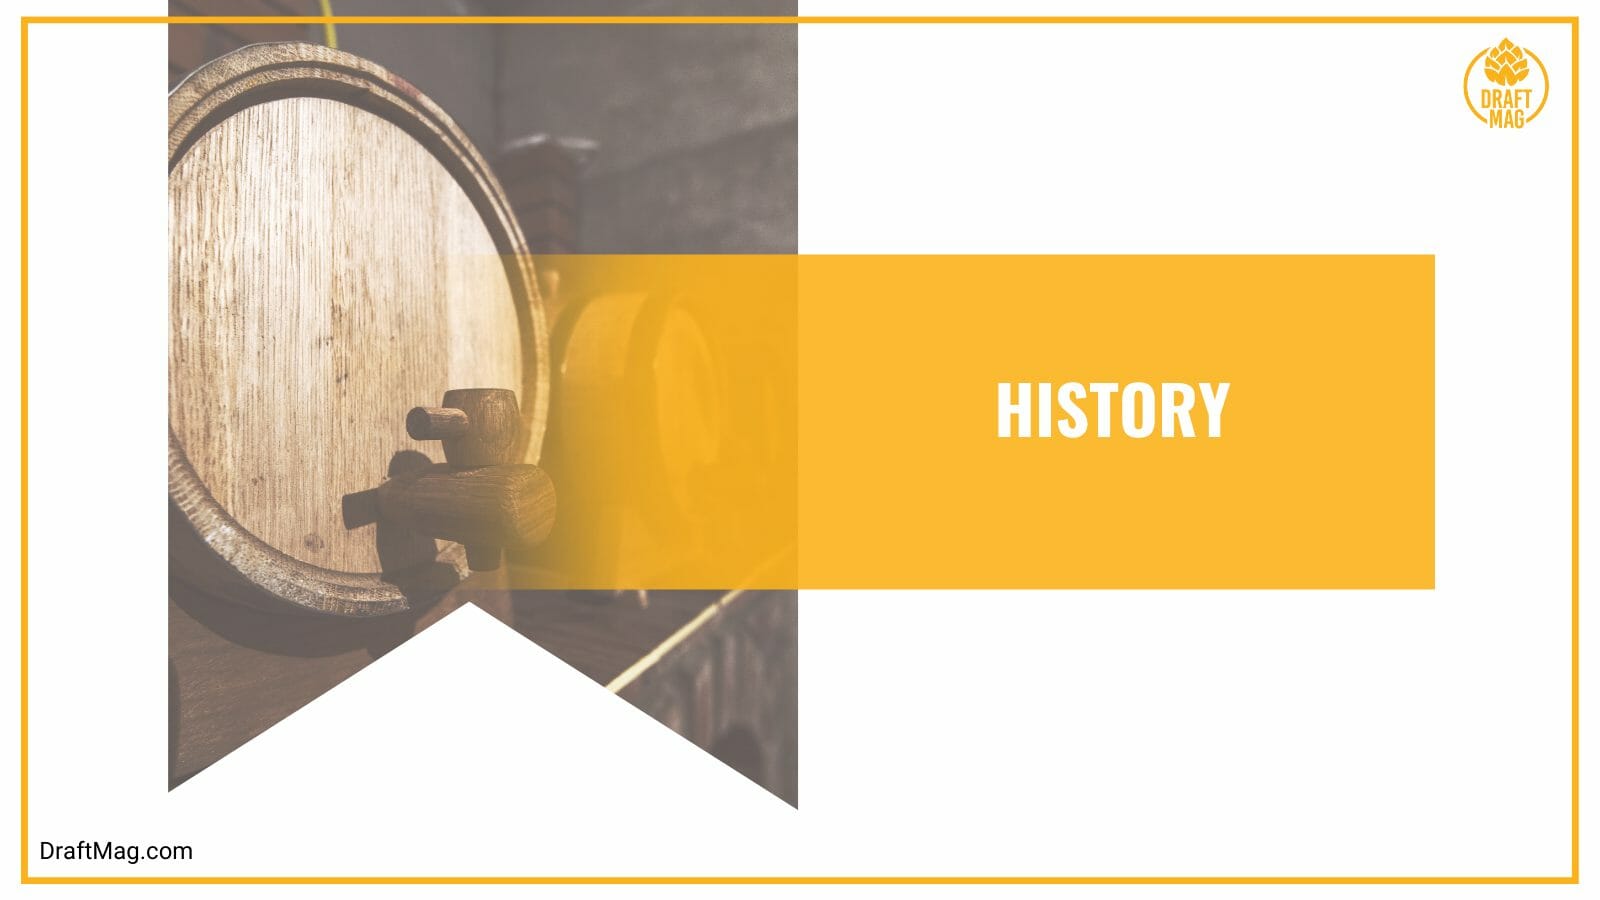 Malt liquor history information